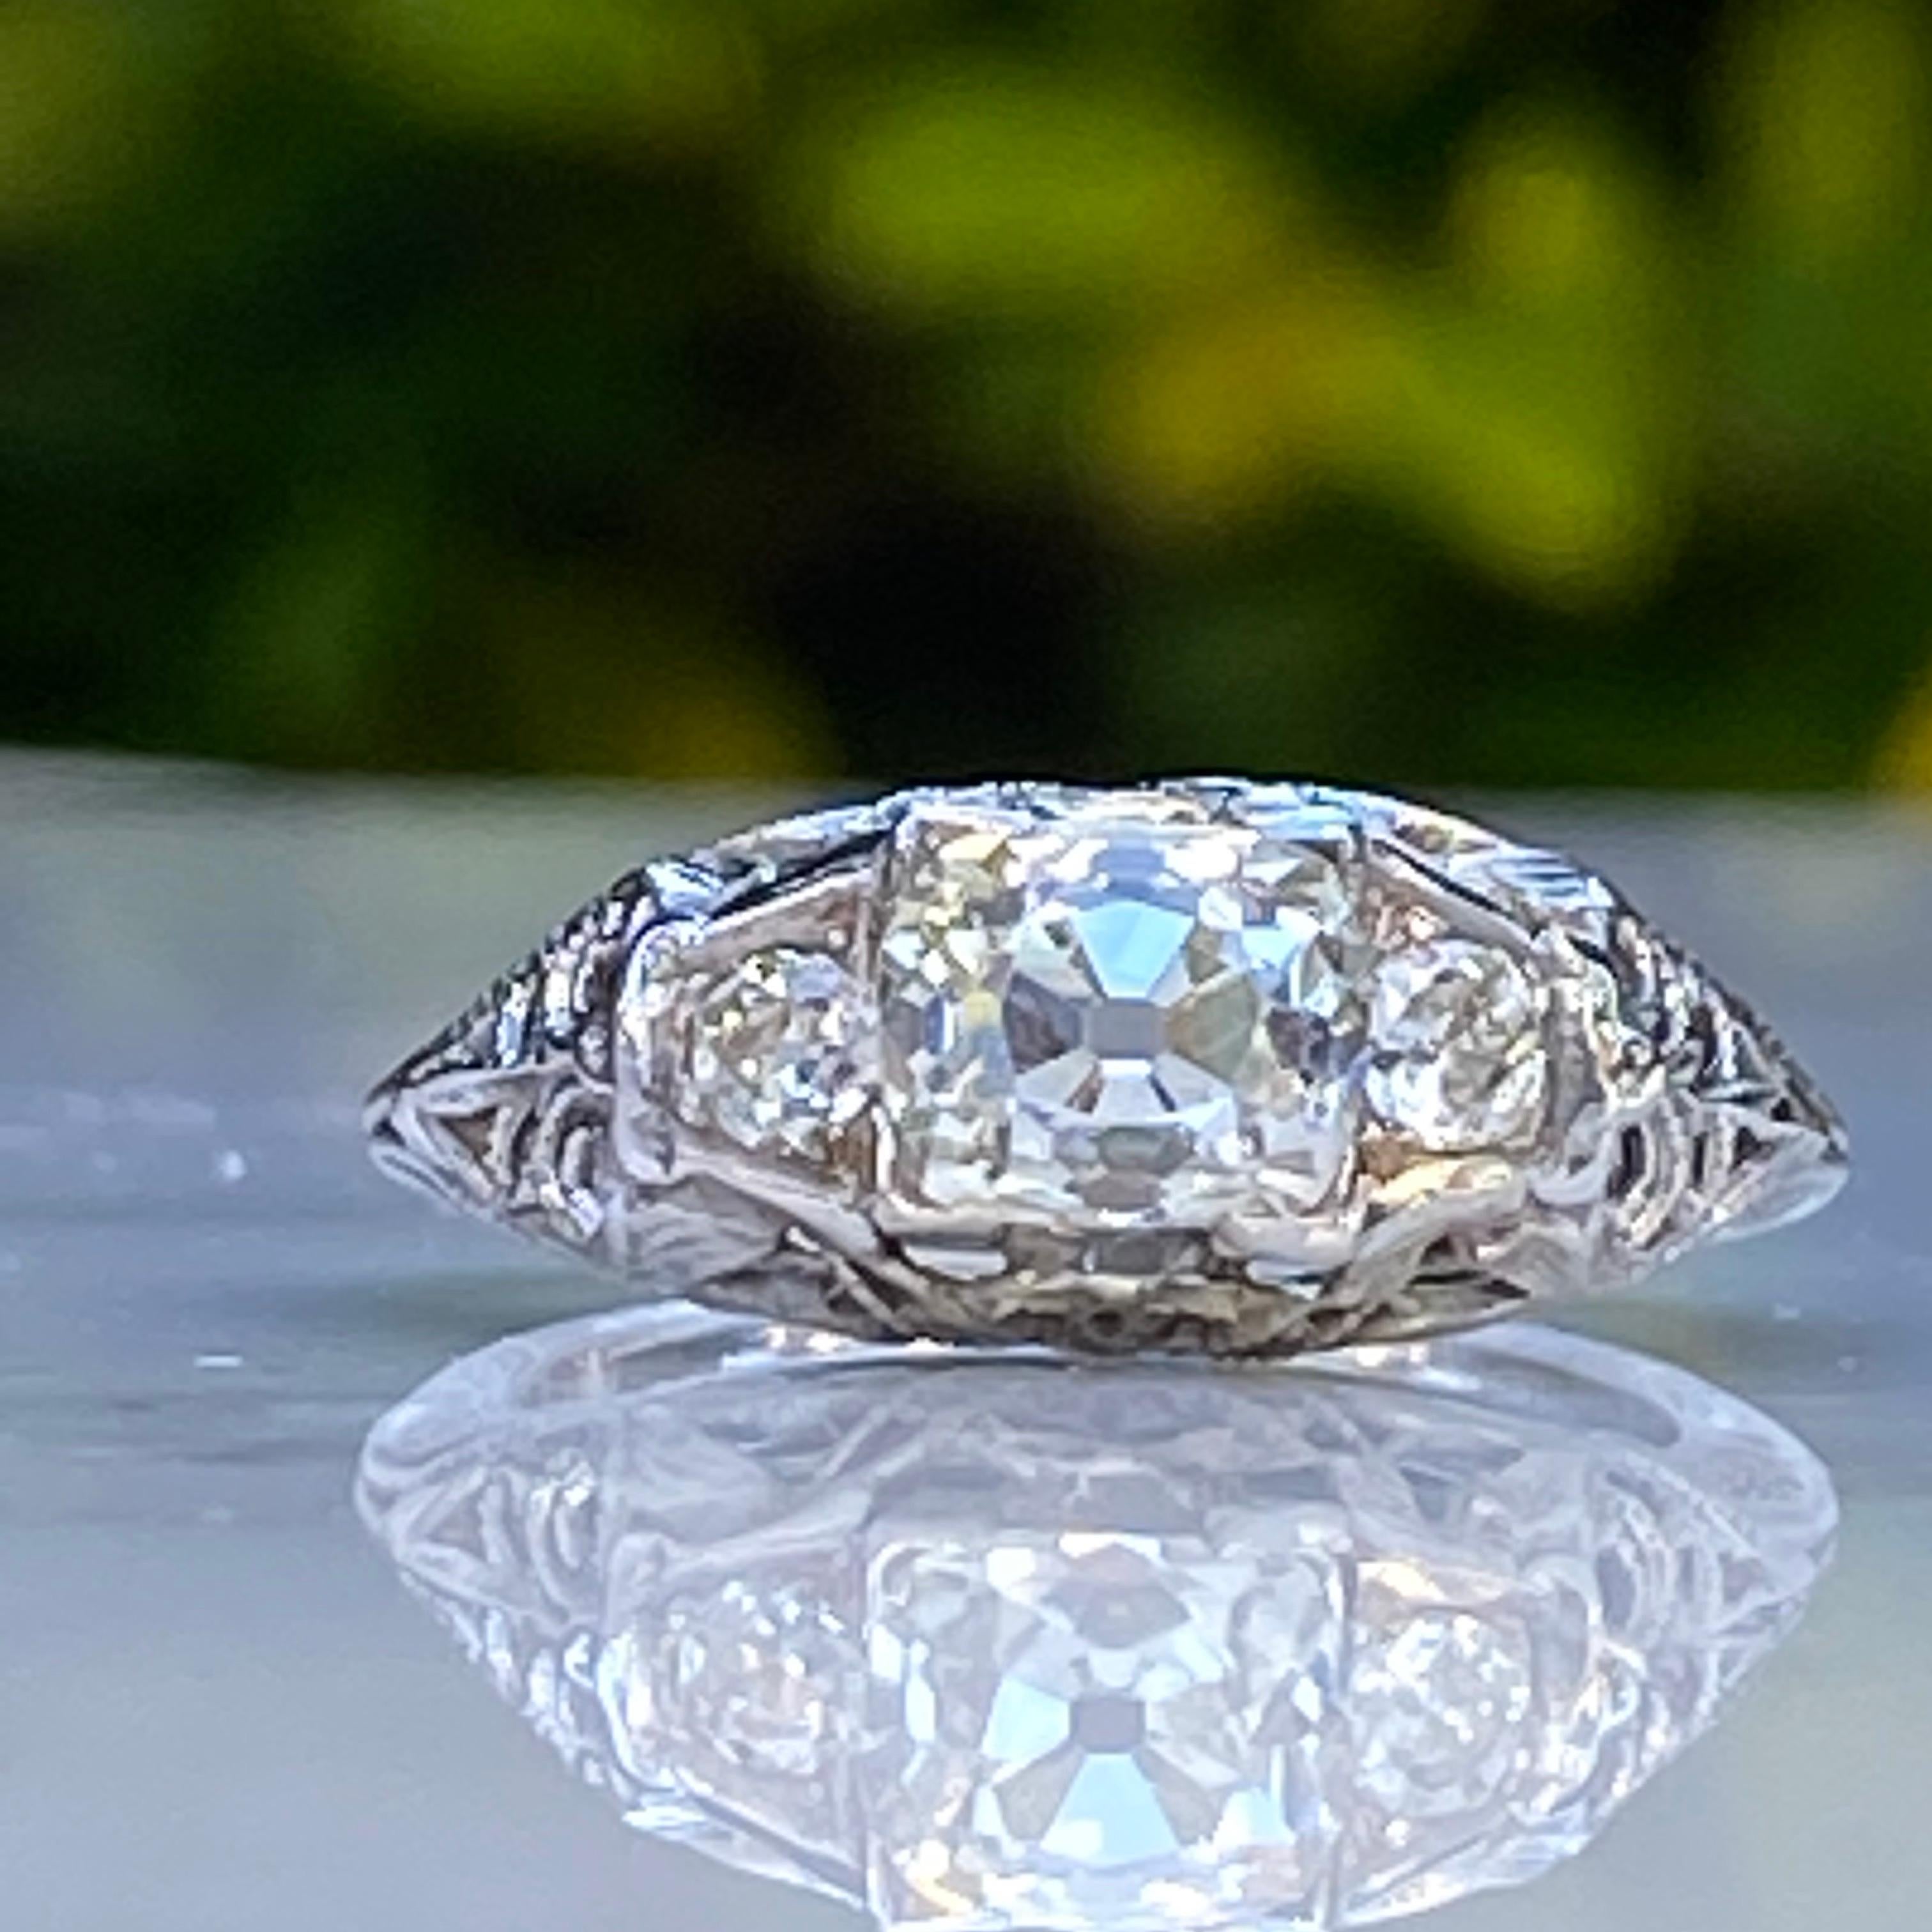 Einzelheiten:
Fantastischer filigraner 18K Weißgold 1,37 Karat Diamantring mit altem Minenschliff aus den 1920er Jahren! Die Filigranität ist filigran und zart, und der Ring hat eine großartige, flache Fassung. Dieser Ring wird mit einem